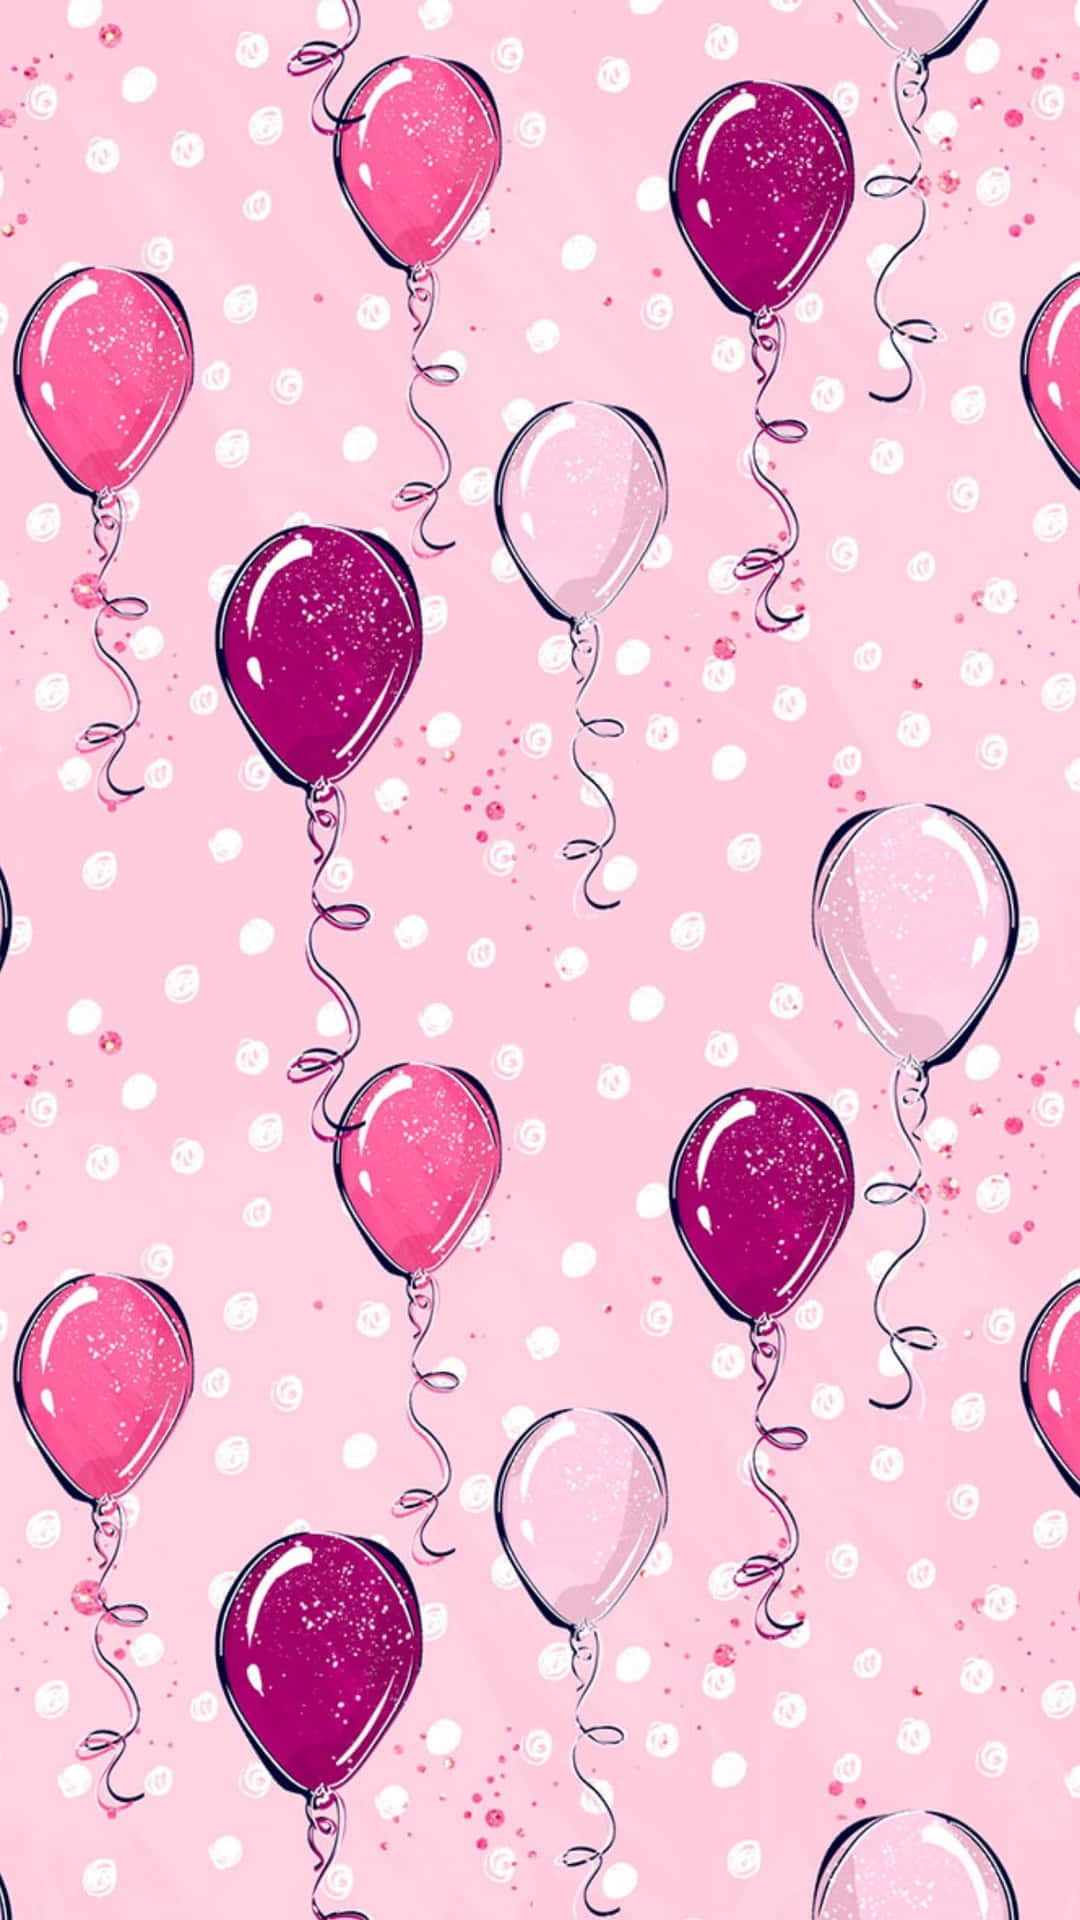 Balõesrosa E Rosa Em Um Fundo Rosa. Papel de Parede